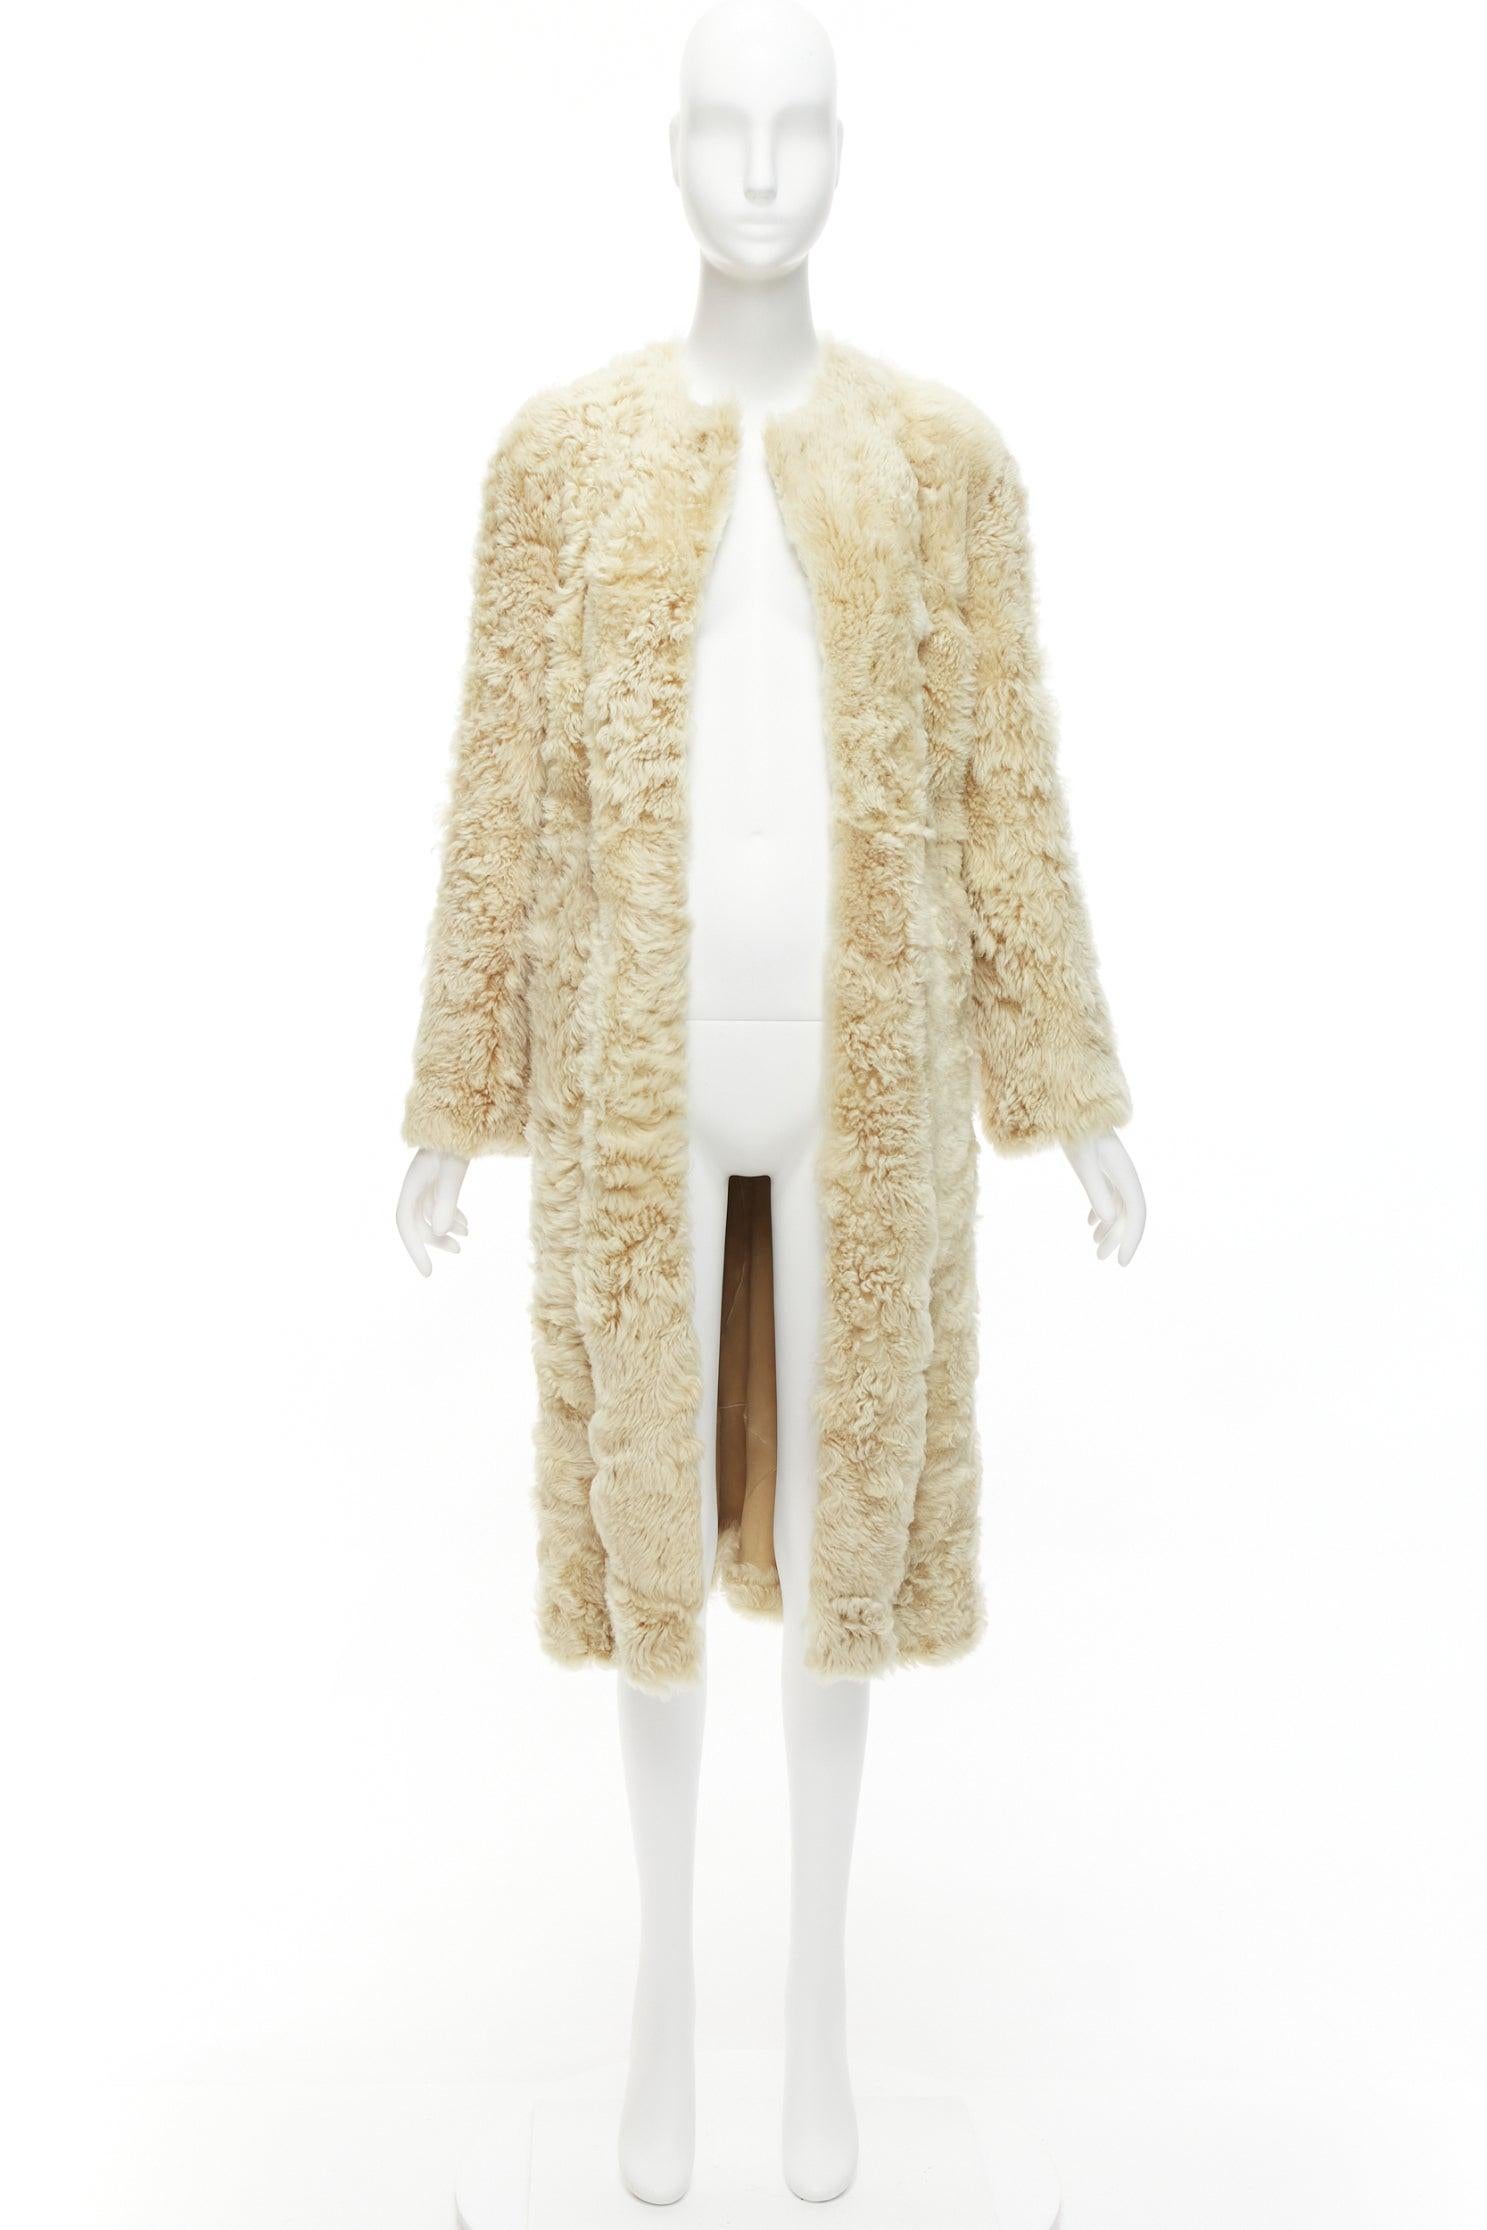 OLD CELINE Phoebe Philo 100% lambskin shearling longline fur coat FR36 S 5